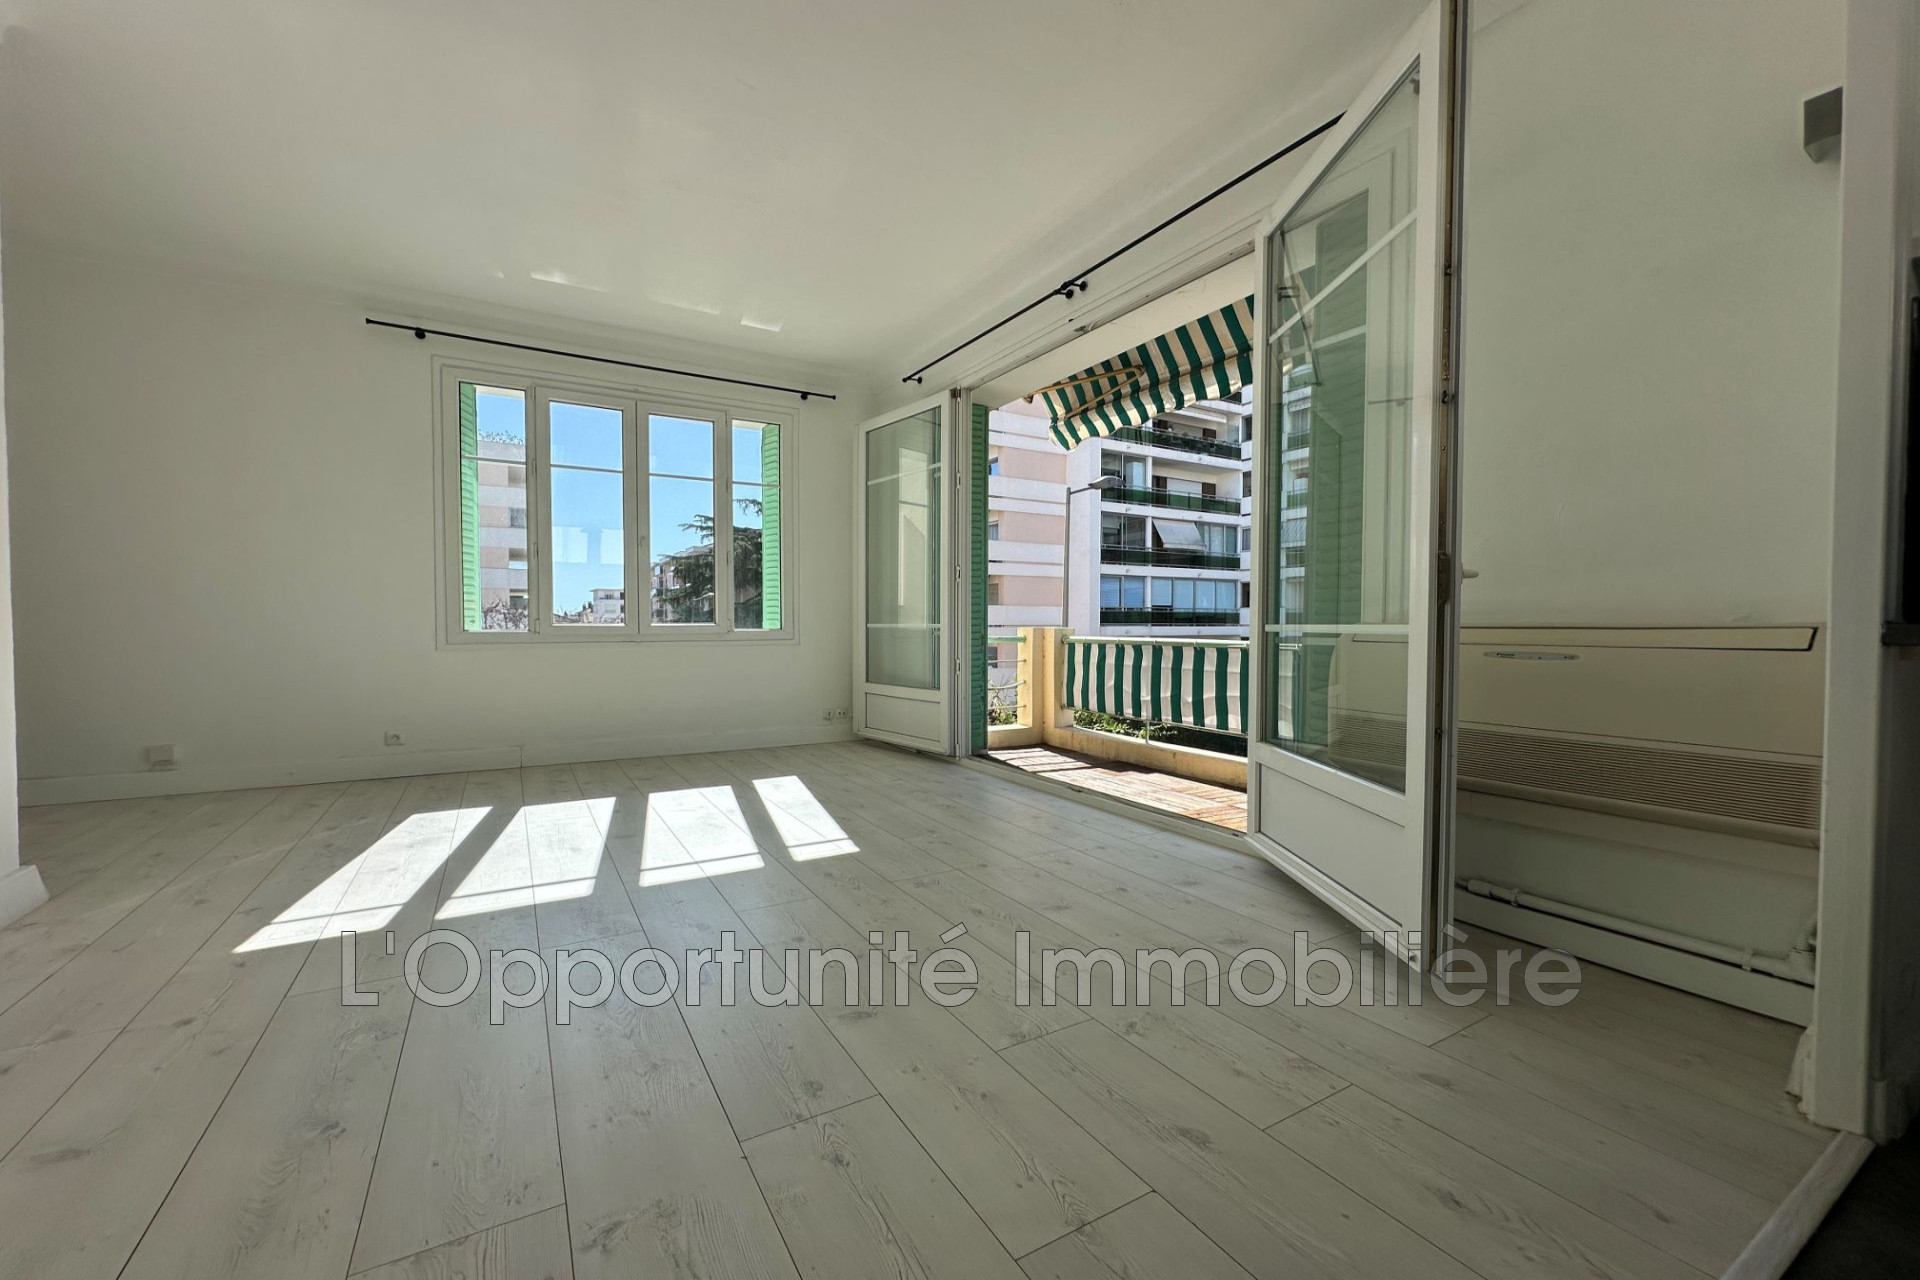 Vente Appartement 50m² 2 Pièces à Cannes (06400) - L'Opportunite Immobiliere